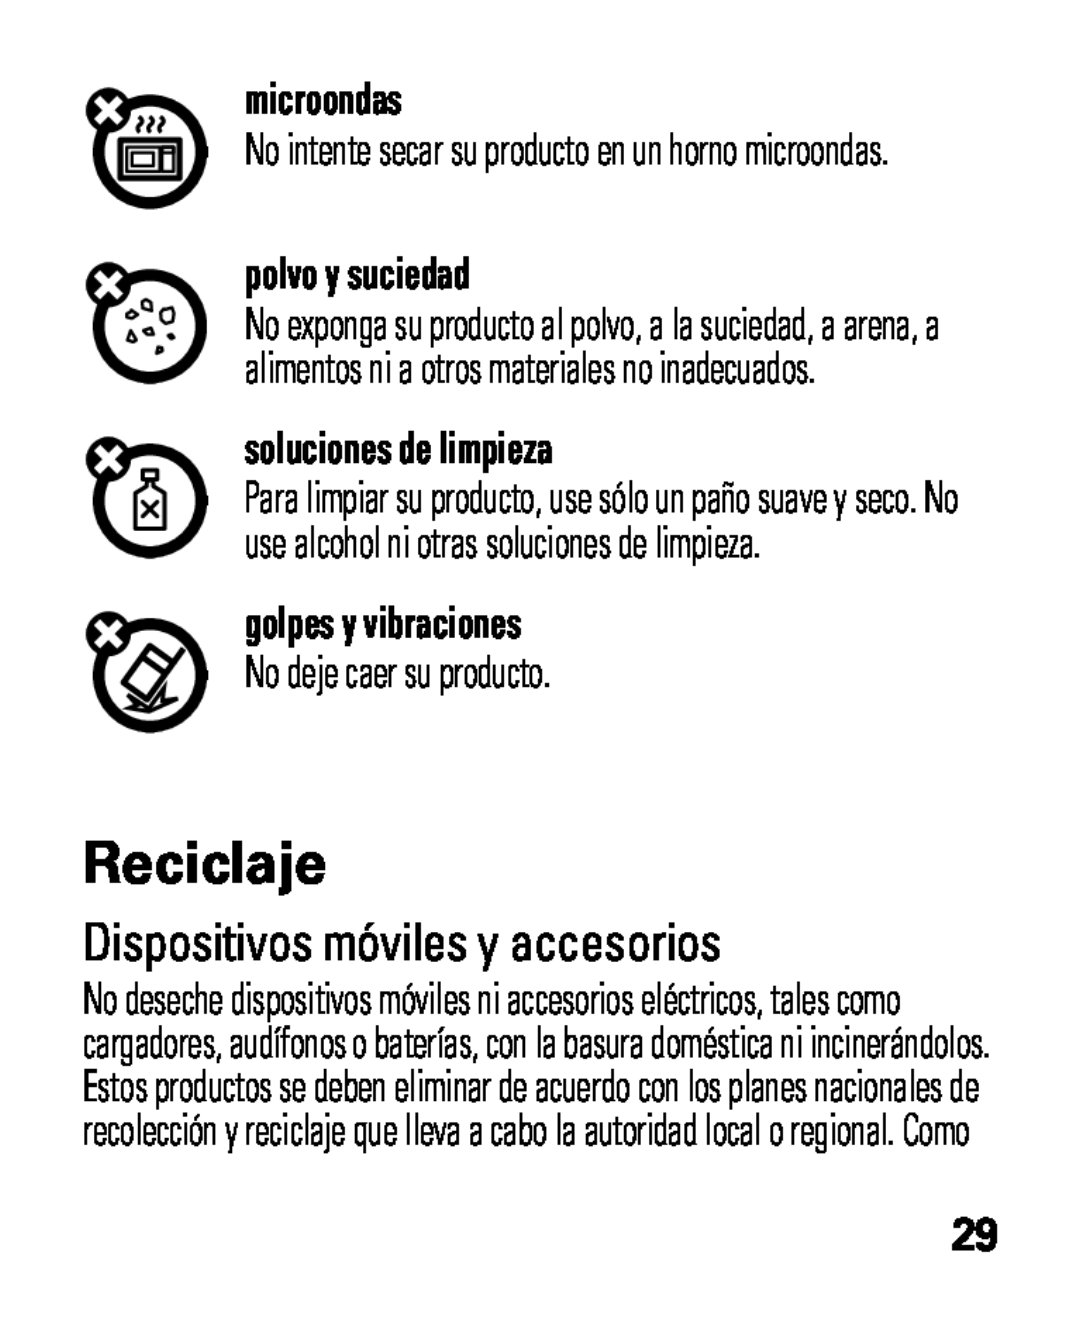 Motorola HK100 Reciclaje, Dispositivos móviles y accesorios, microondas, polvo y suciedad, soluciones de limpieza 